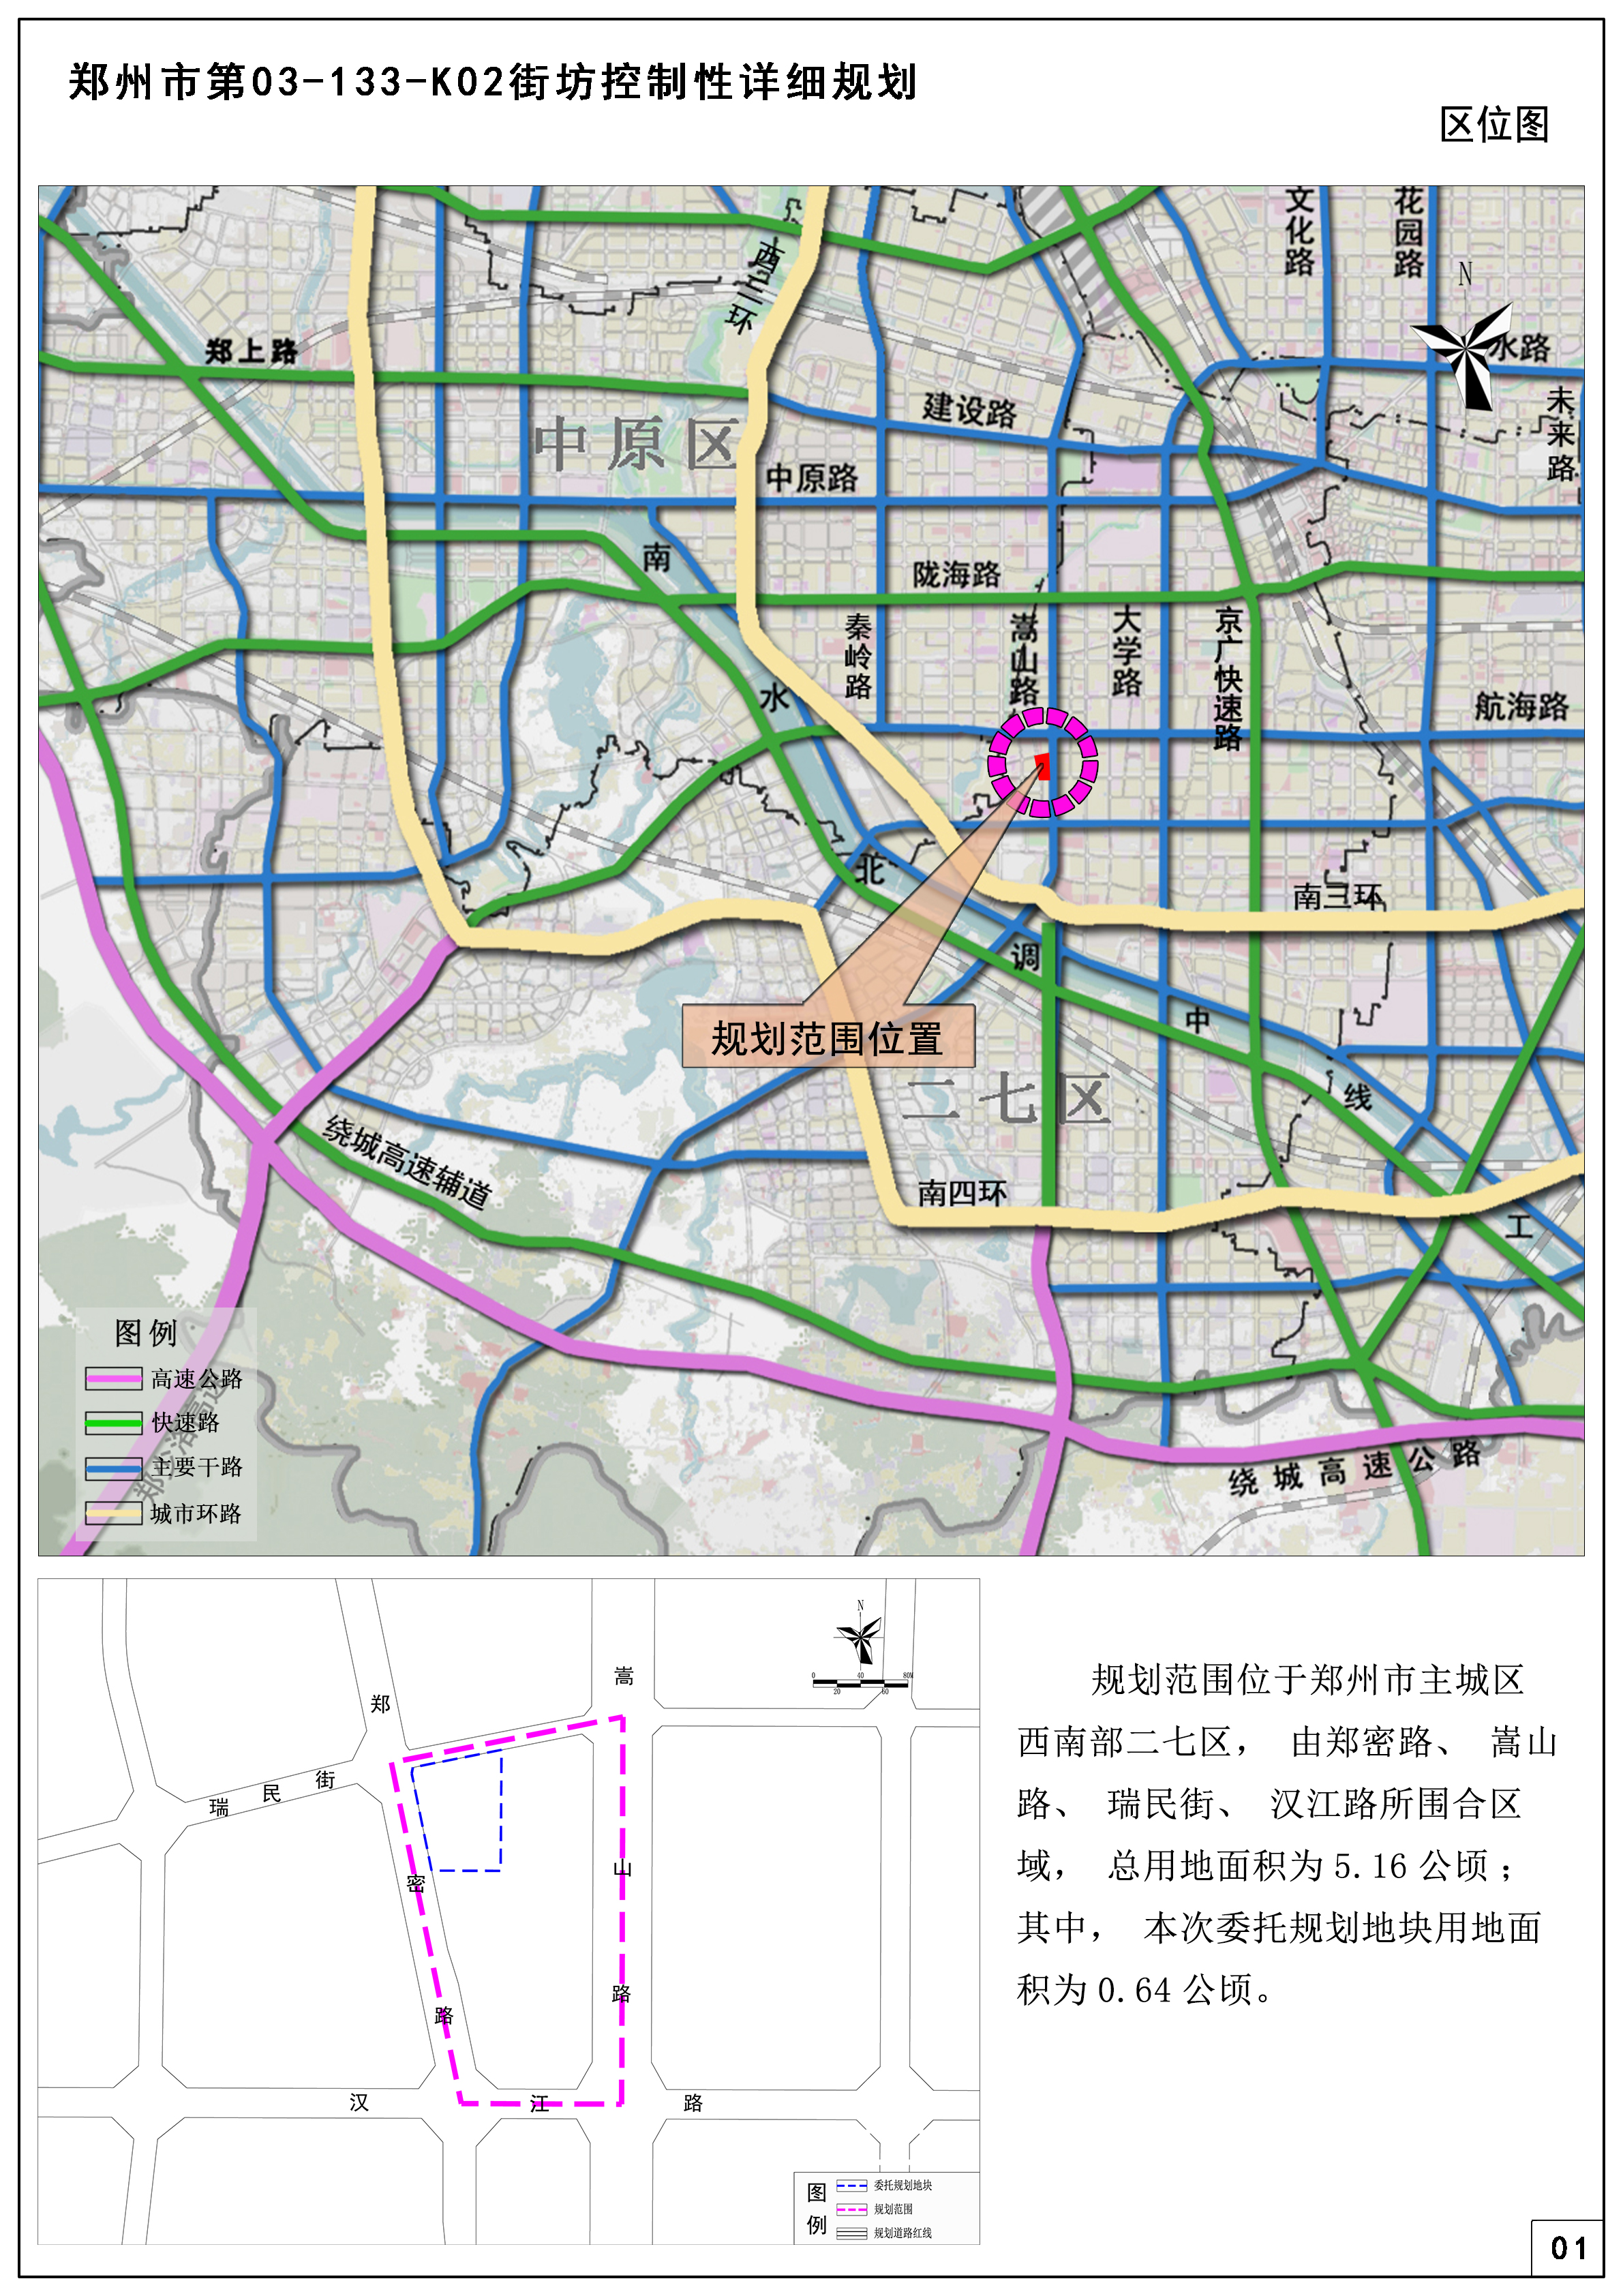 郑州市第03-133-K02街坊控制性详细规划